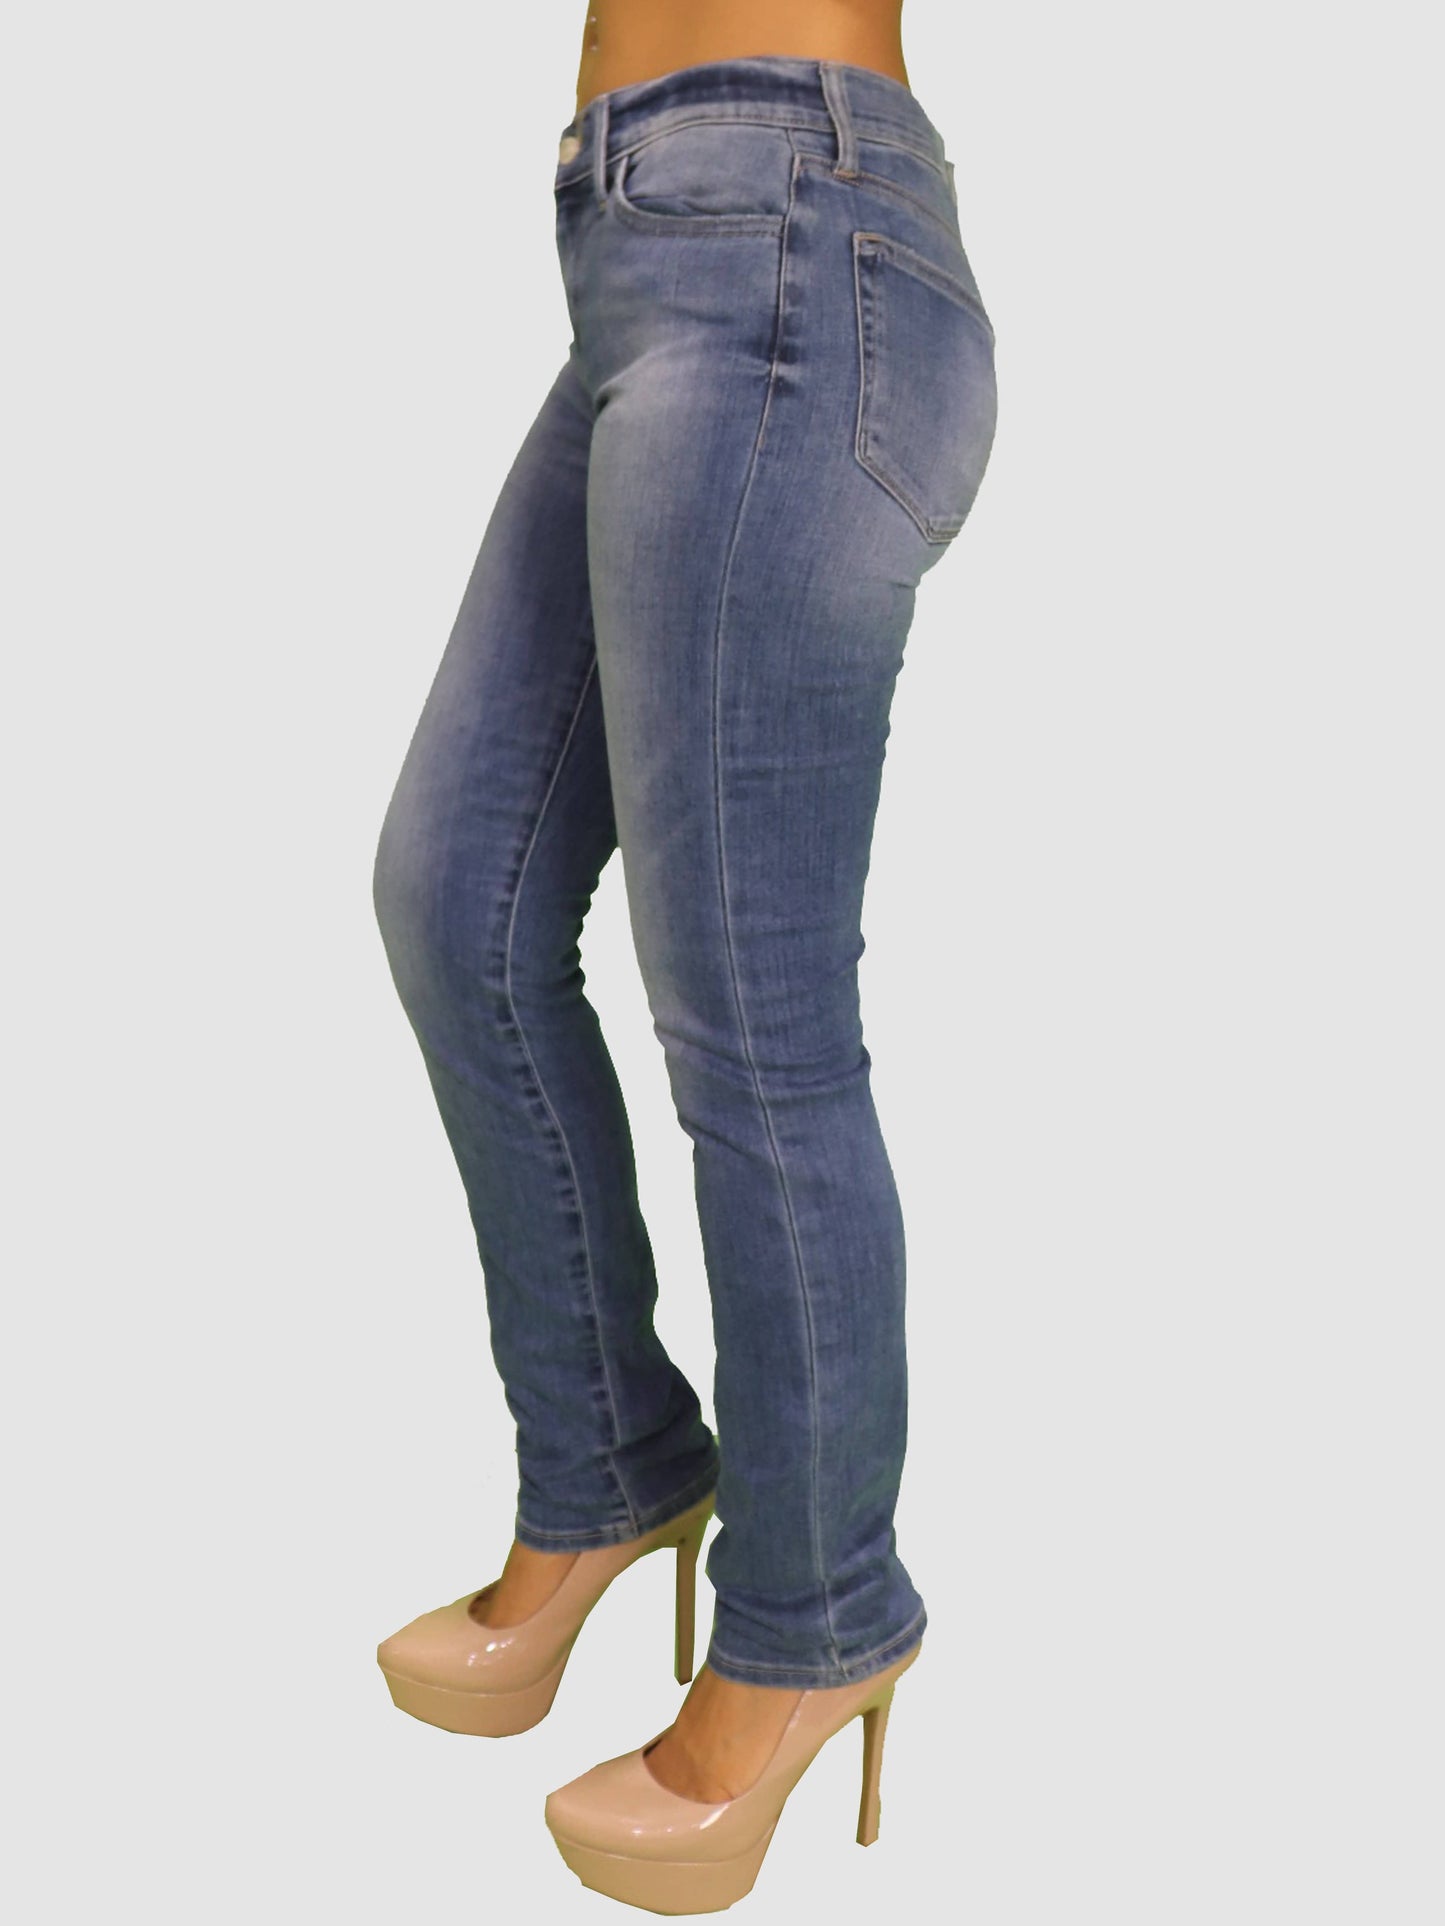 LUCKY BRAND Womens Bottoms XS / Light Blue Denim Jeans